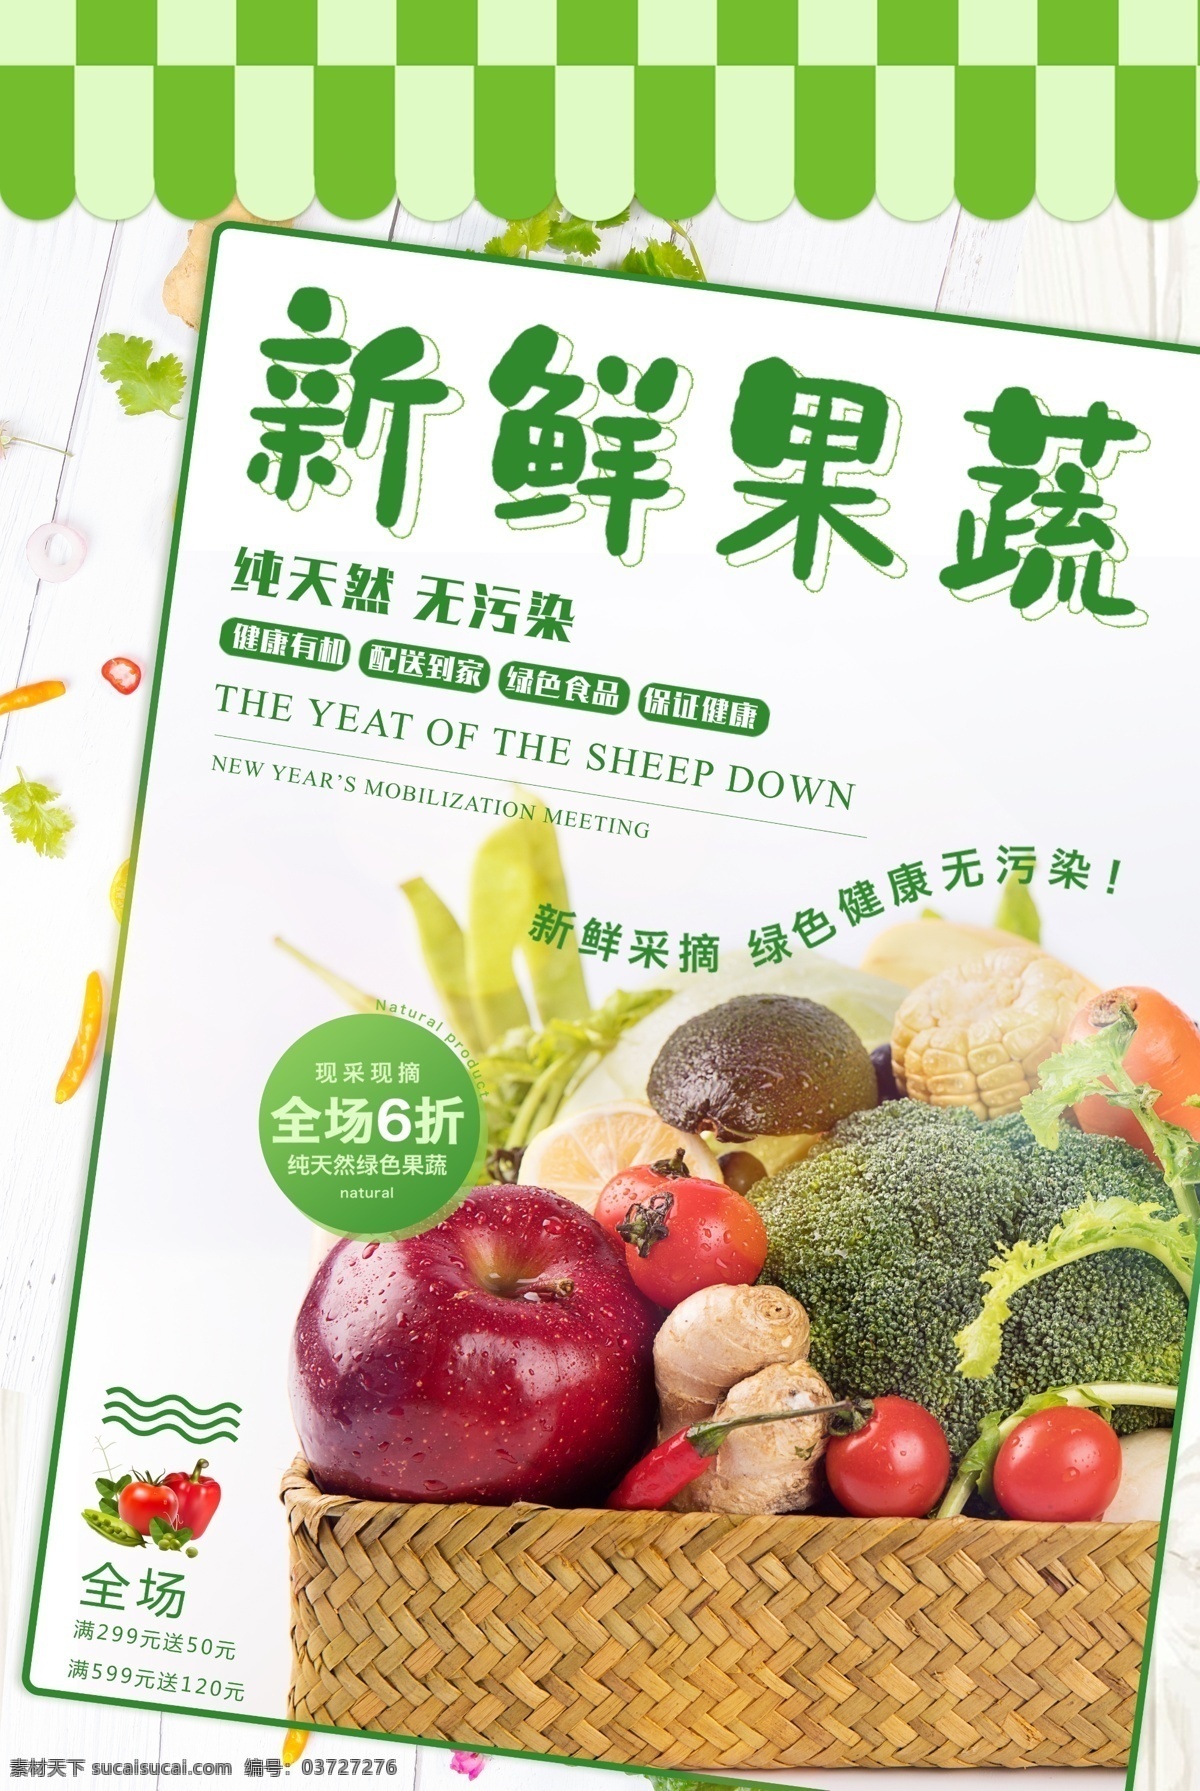 新鲜 果蔬 促销 海报 健康 无公害 蔬菜 时令蔬菜 时蔬 有机蔬菜 果蔬海报设计 纯天然蔬菜 蔬菜海报 新鲜果蔬 促销海报